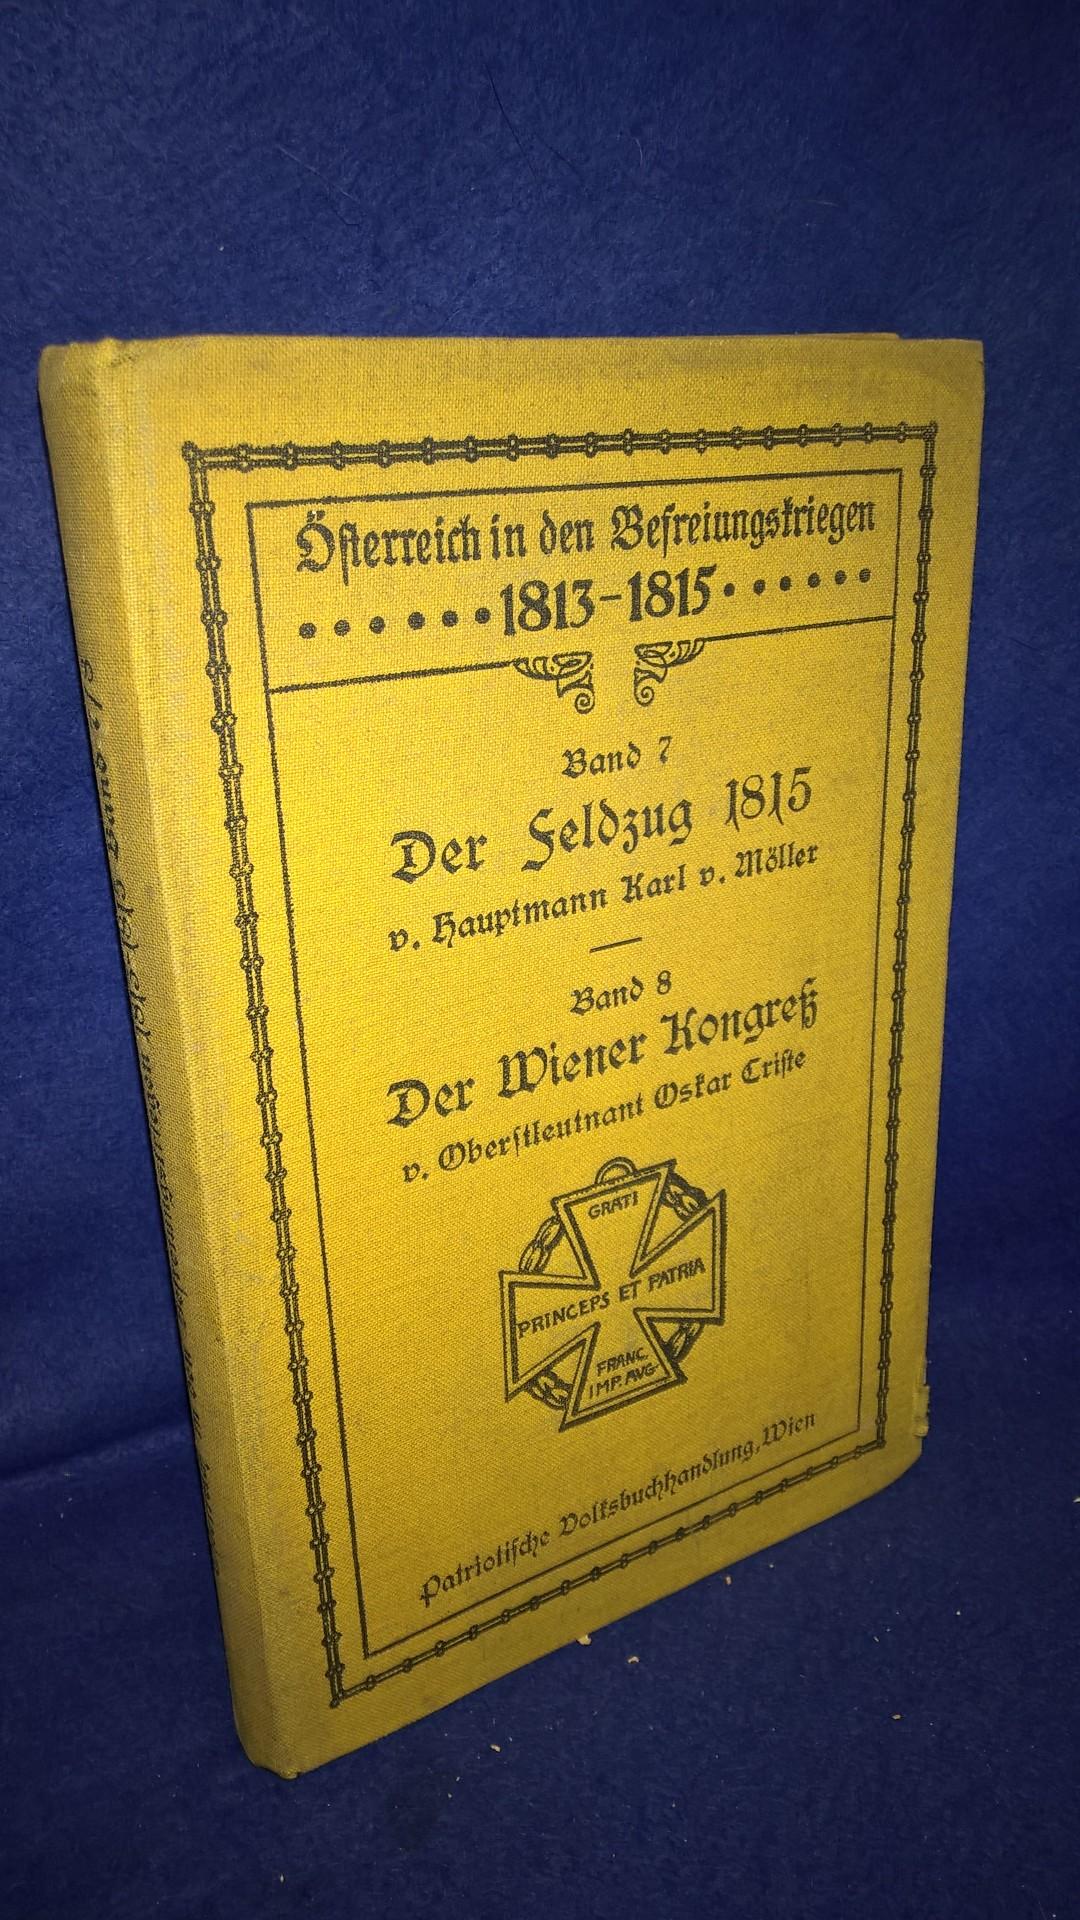  Österreich in den Befreiungskriegen 1813-1815.  7. Band. Die hundert Tage 1815.// 8. Band. Der Wiener Kongreß. 2 Bände in einem Band gebunden.